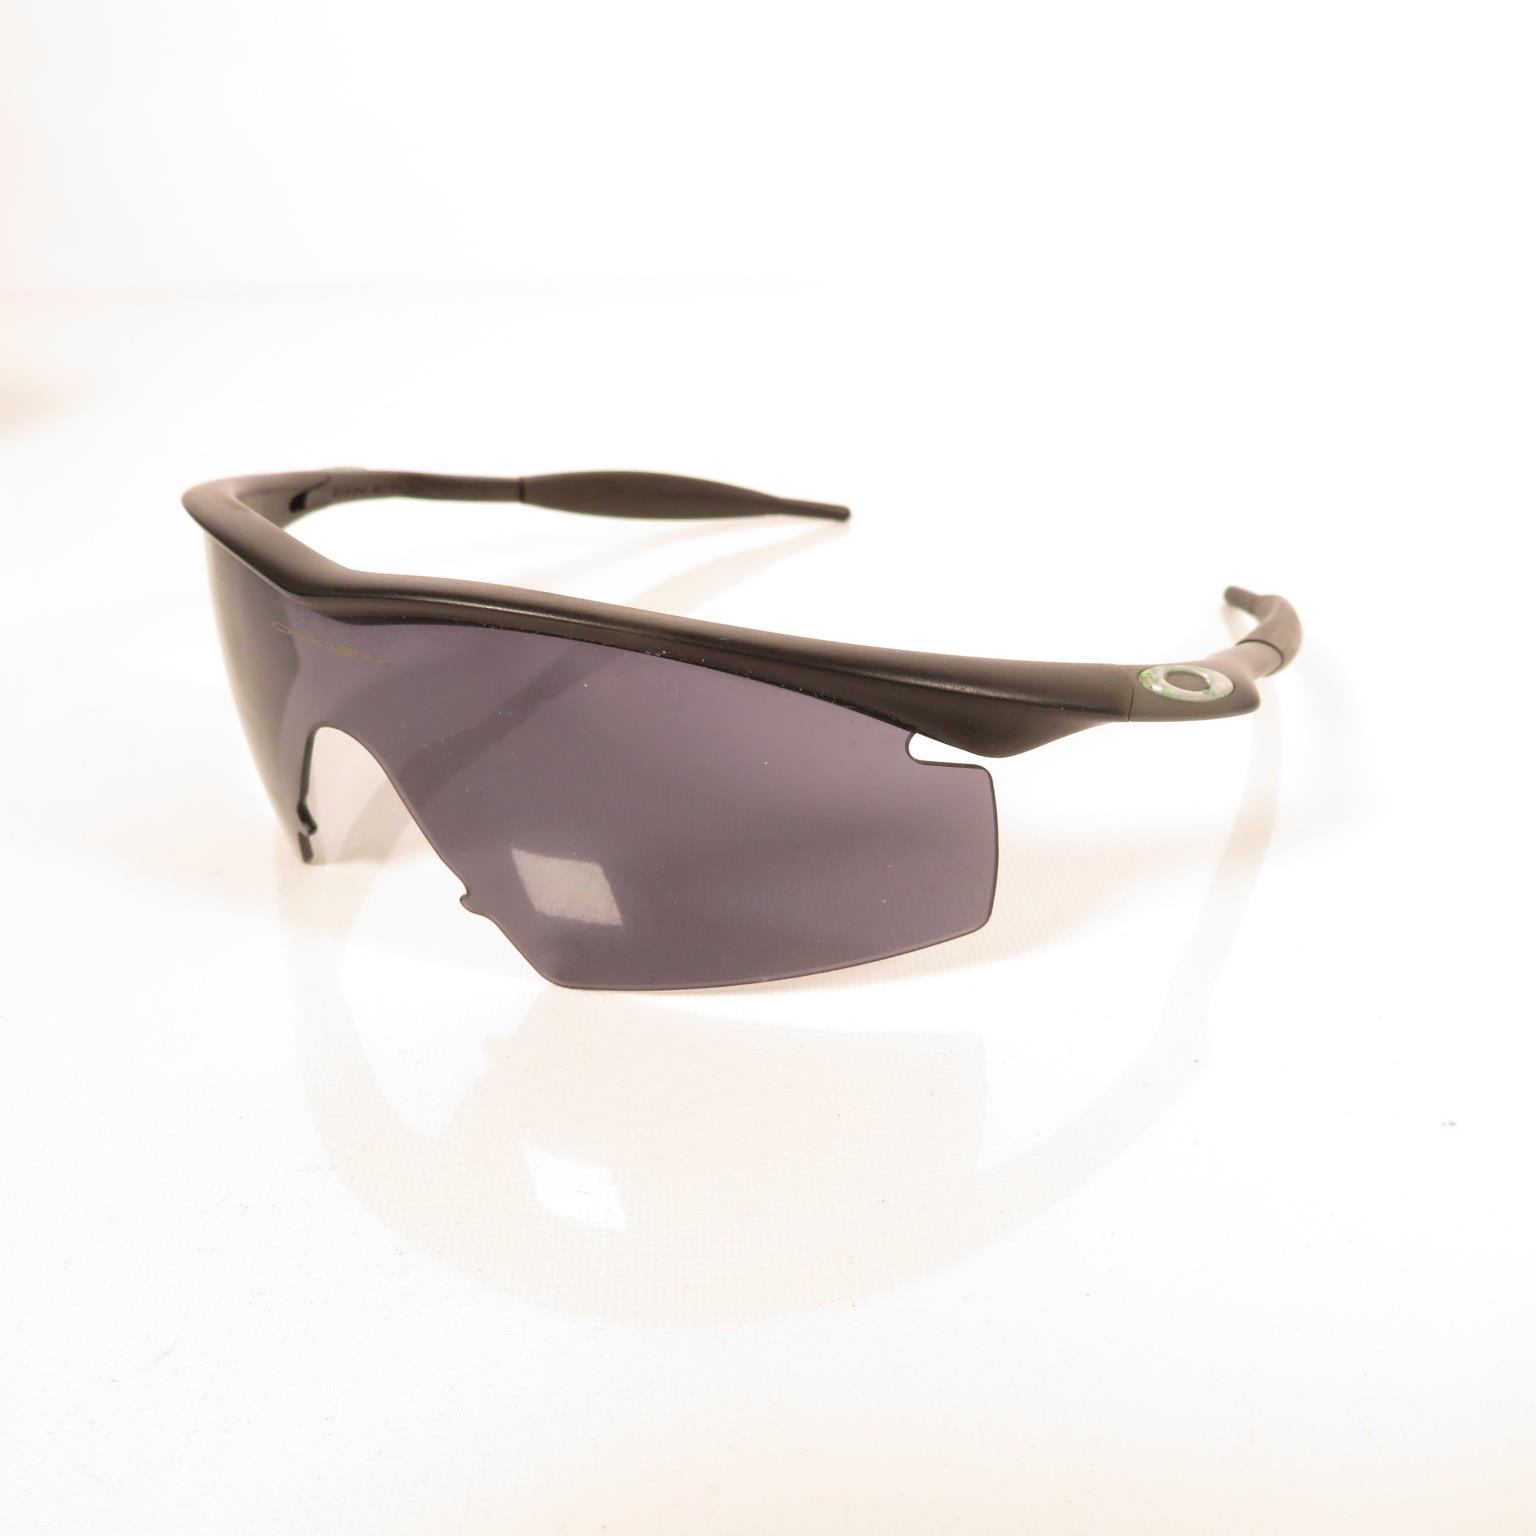 Pair of Porsche Folding Sunglasses, Per Sol folding Sunglasses, Oakley sunglasses and Porsche design - Bild 4 aus 17